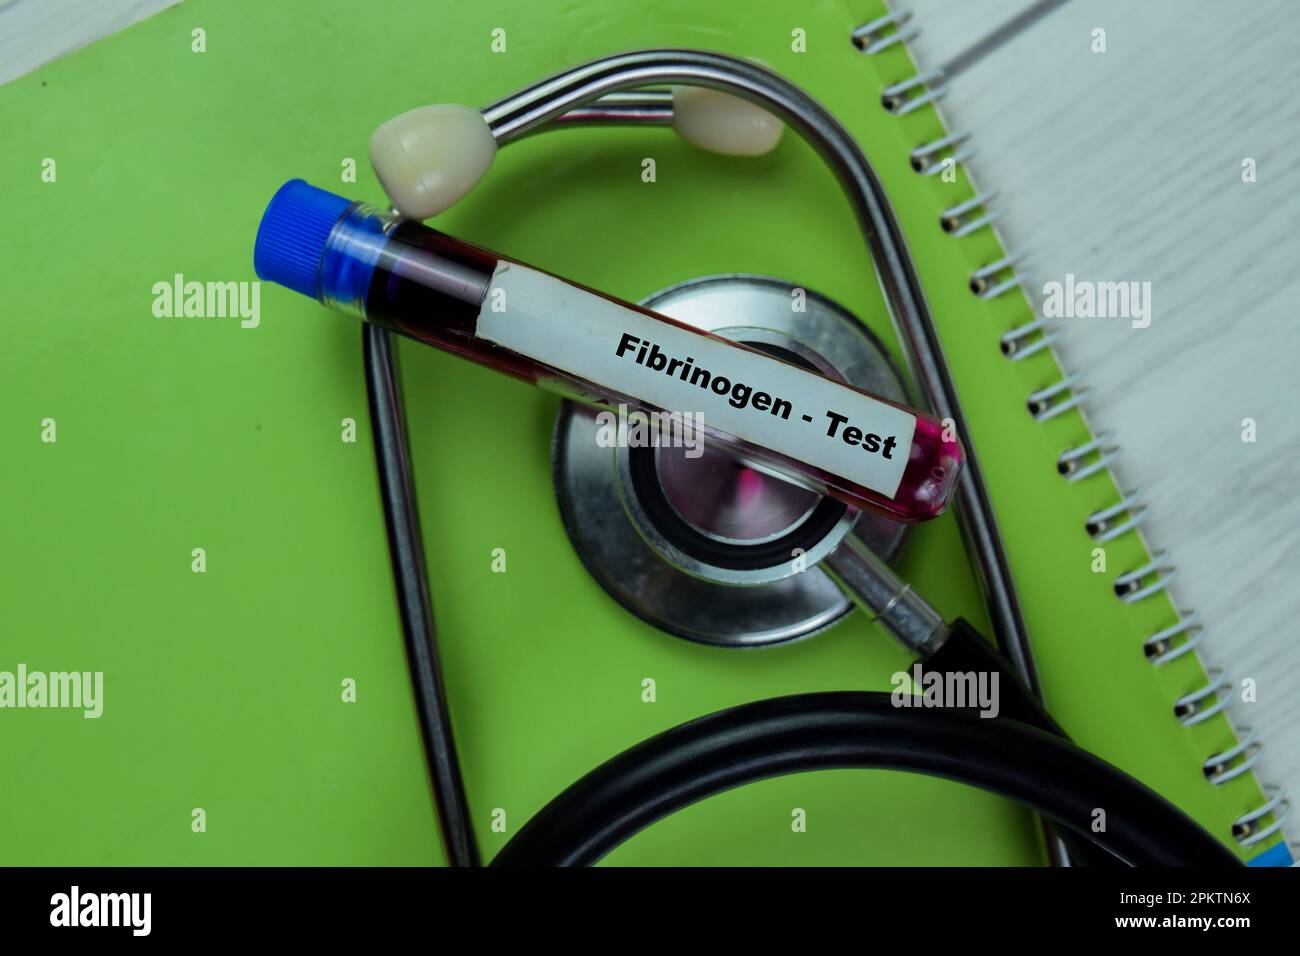 Concetto di fibrinogeno - eseguire il test con un campione di sangue. Concetto sanitario o medico Foto Stock